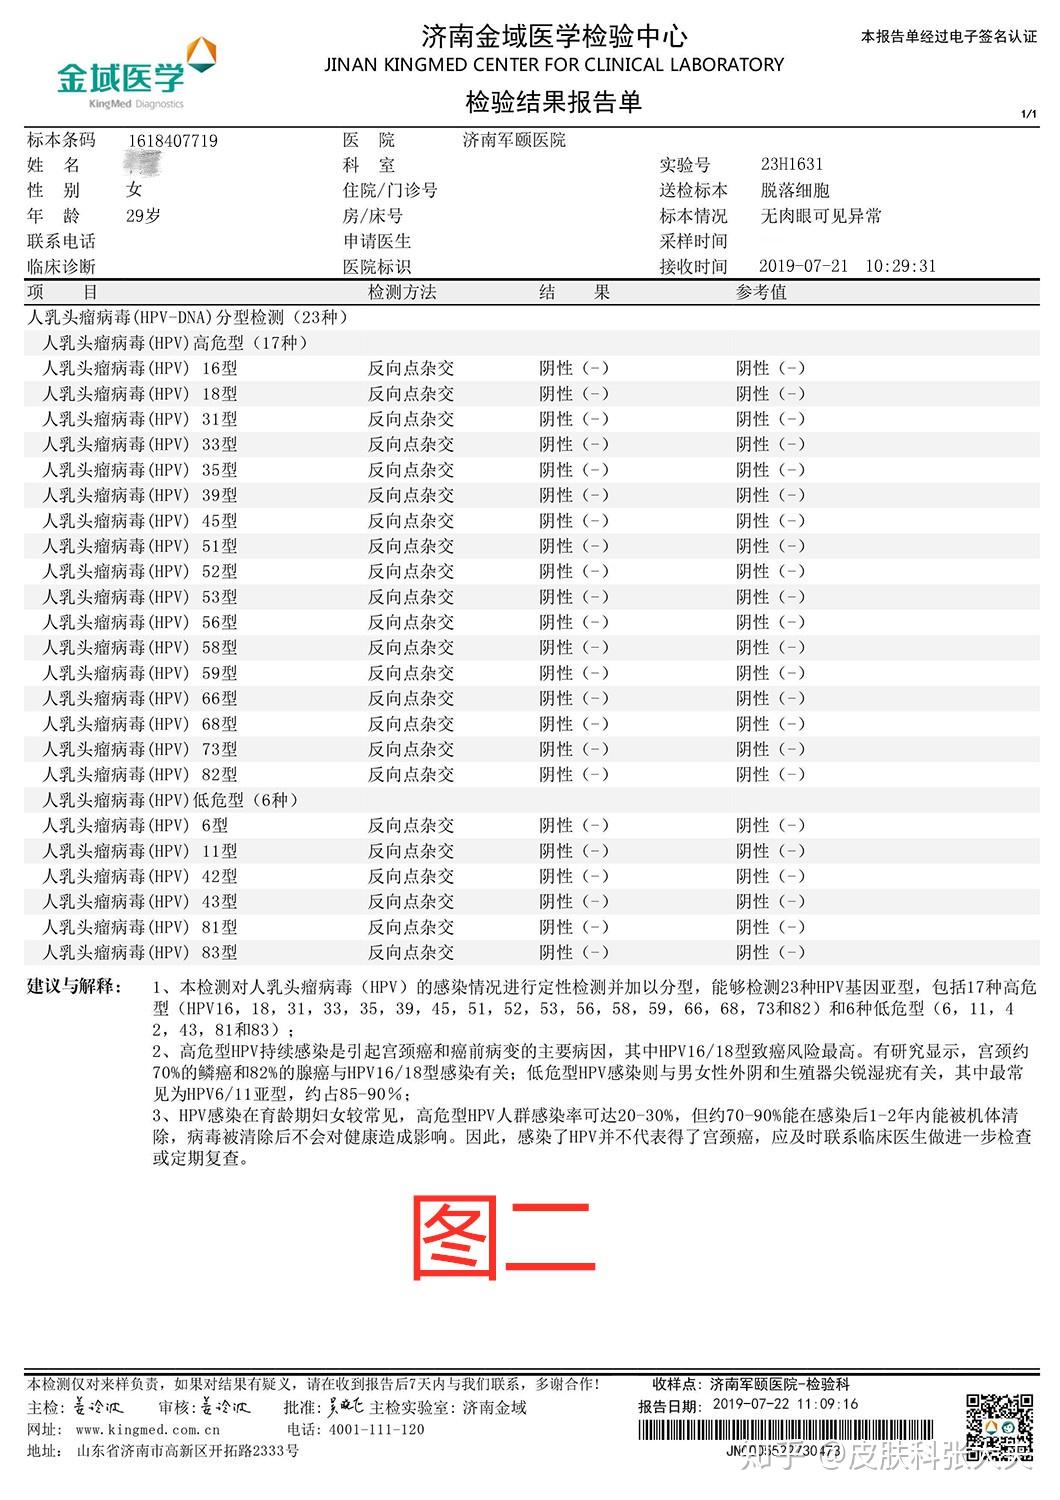 上海市何女士hpv52型高危转阴病例分享